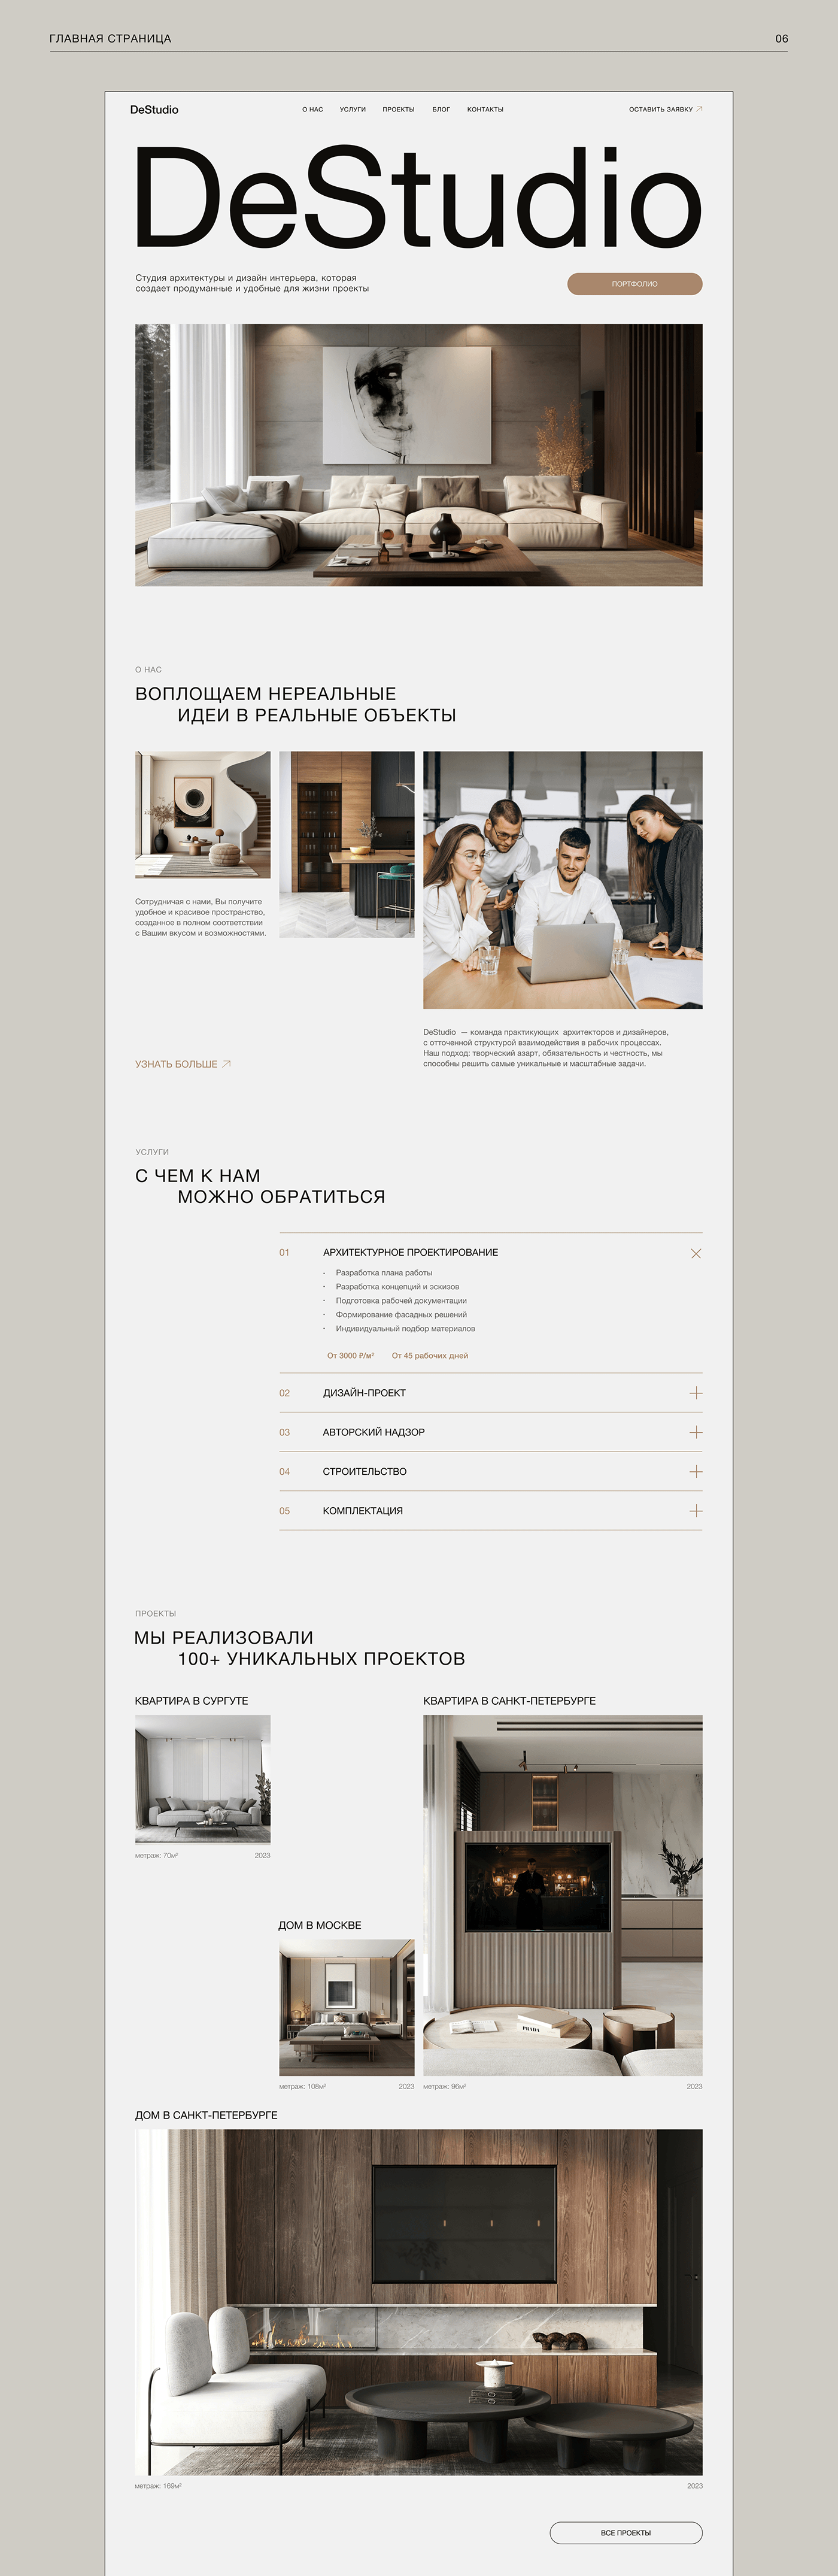 Website DeStudio | Interior design studio — Изображение №10 — Интерфейсы на Dprofile